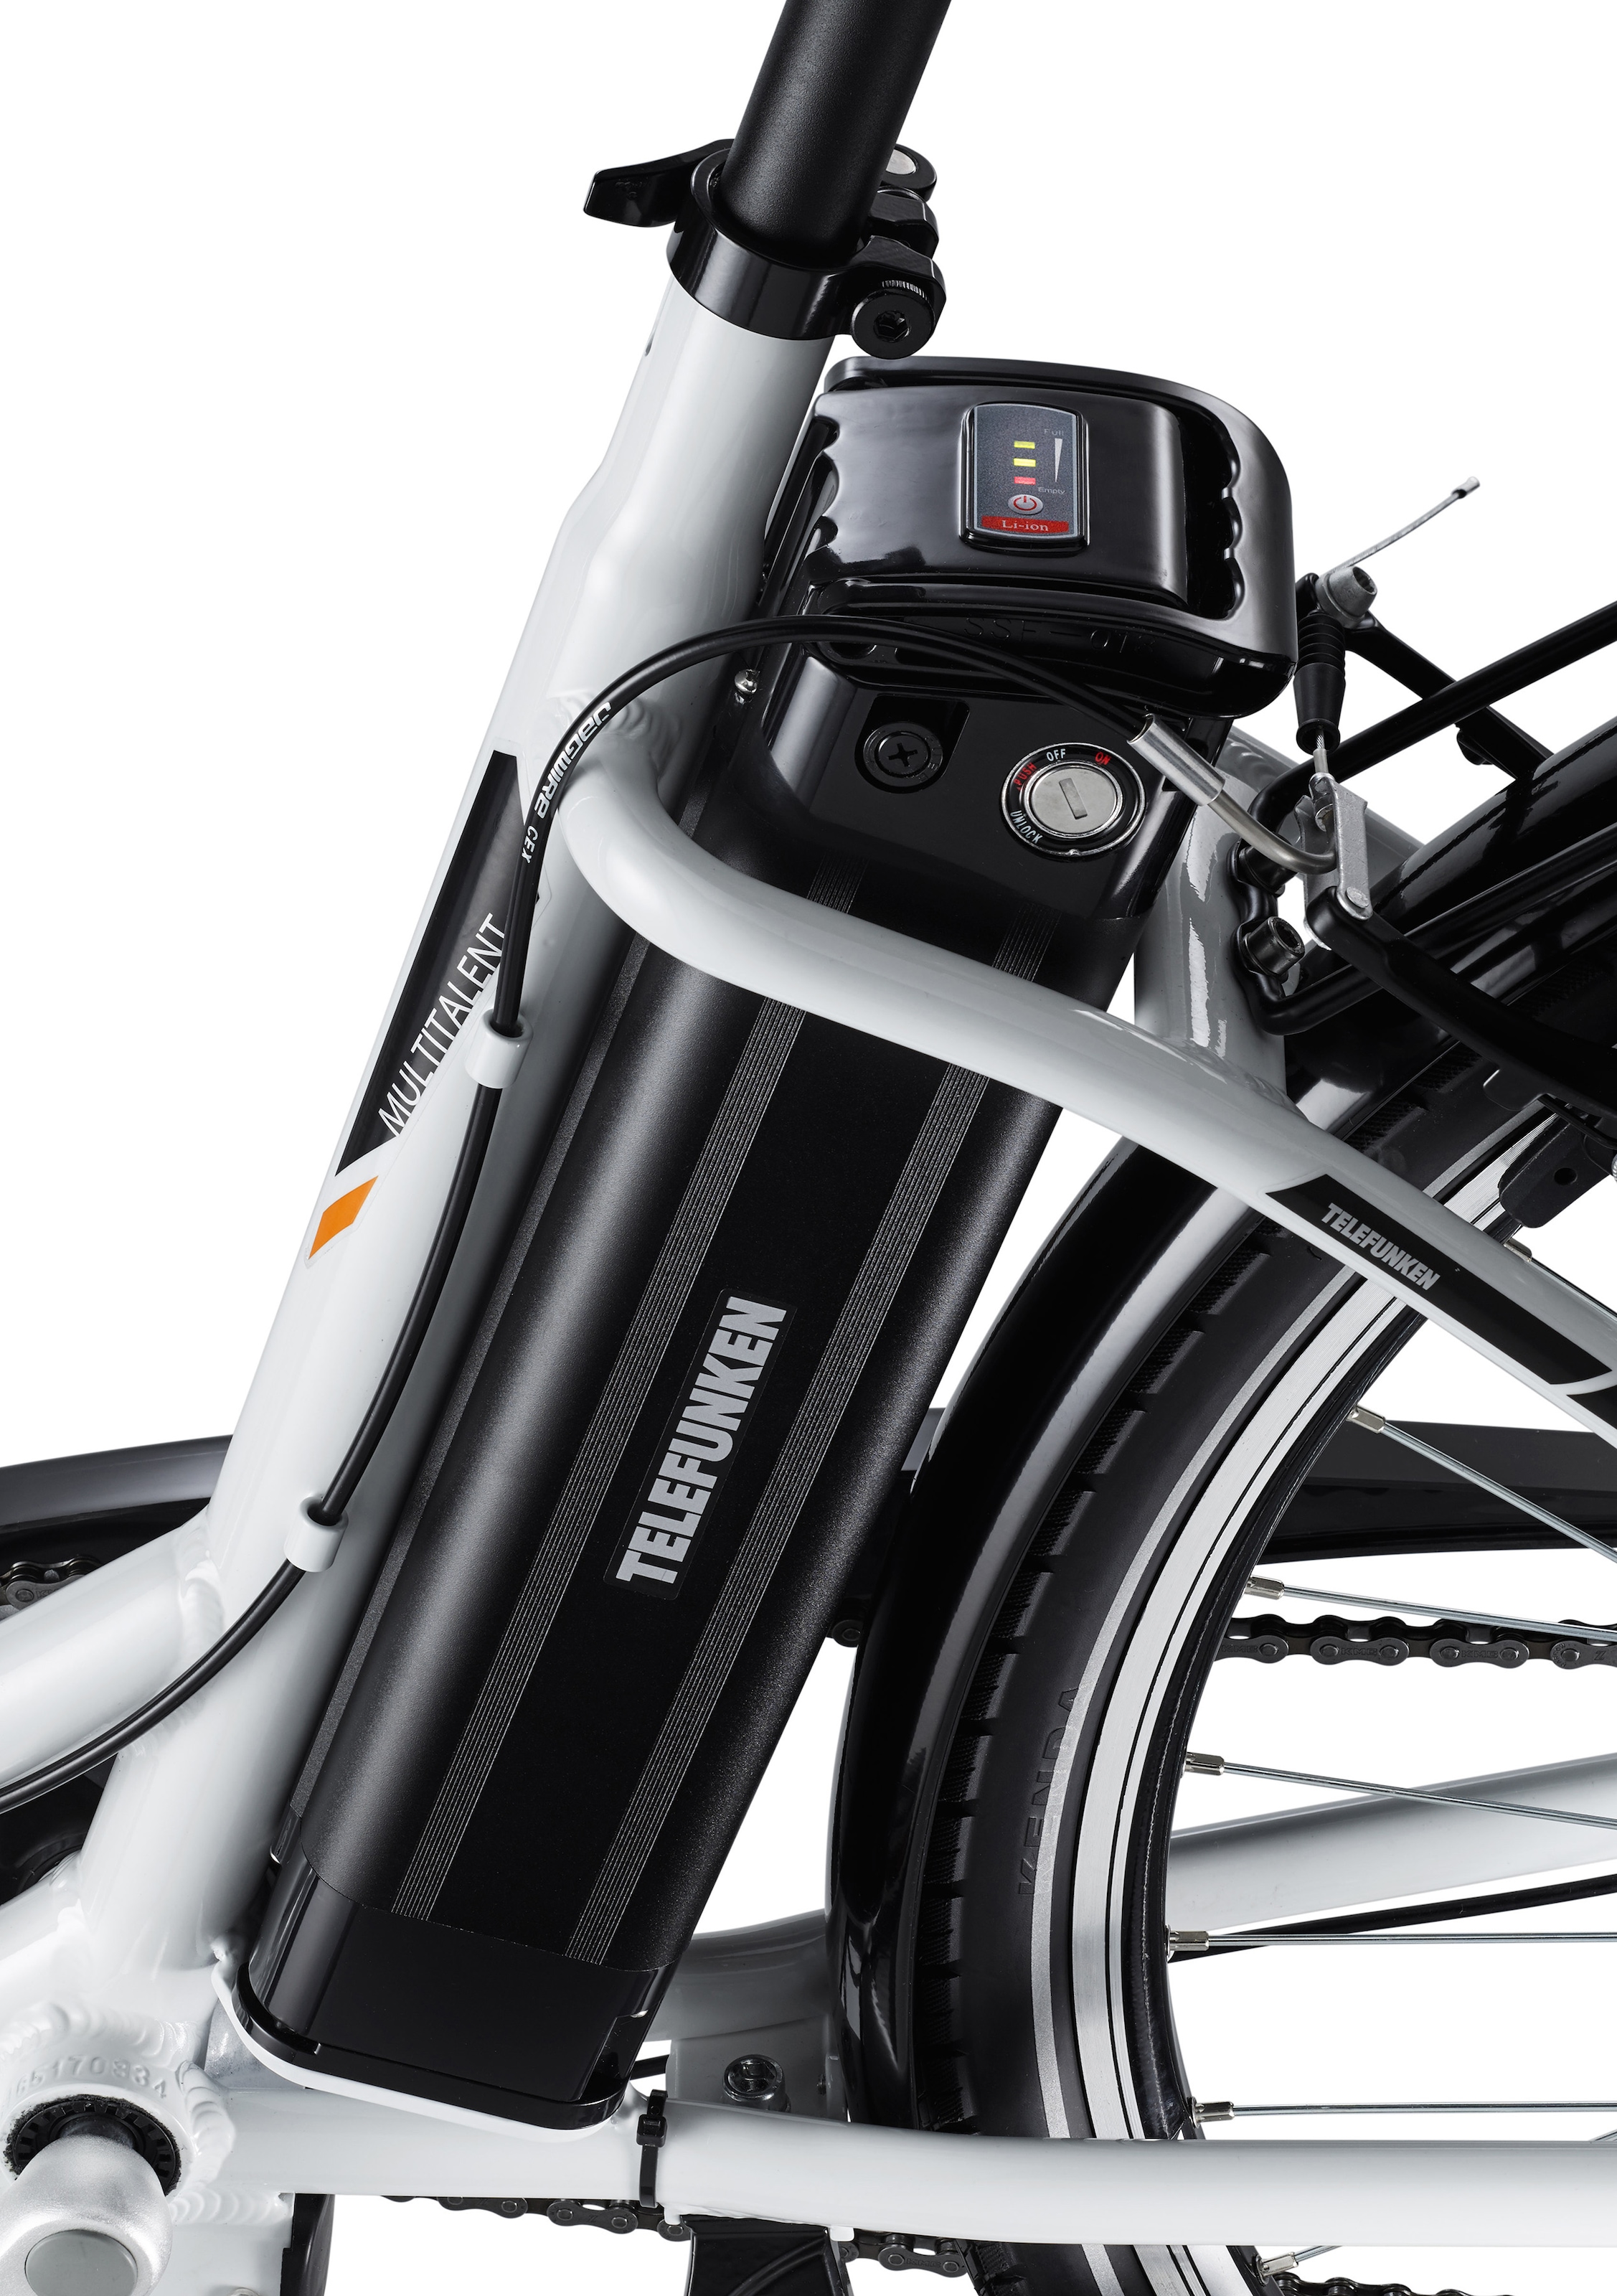 Telefunken E-Bike »Multitalent RC830«, 3 Gang, Shimano, Nexus, Frontmotor 250 W, mit Fahrradkorb